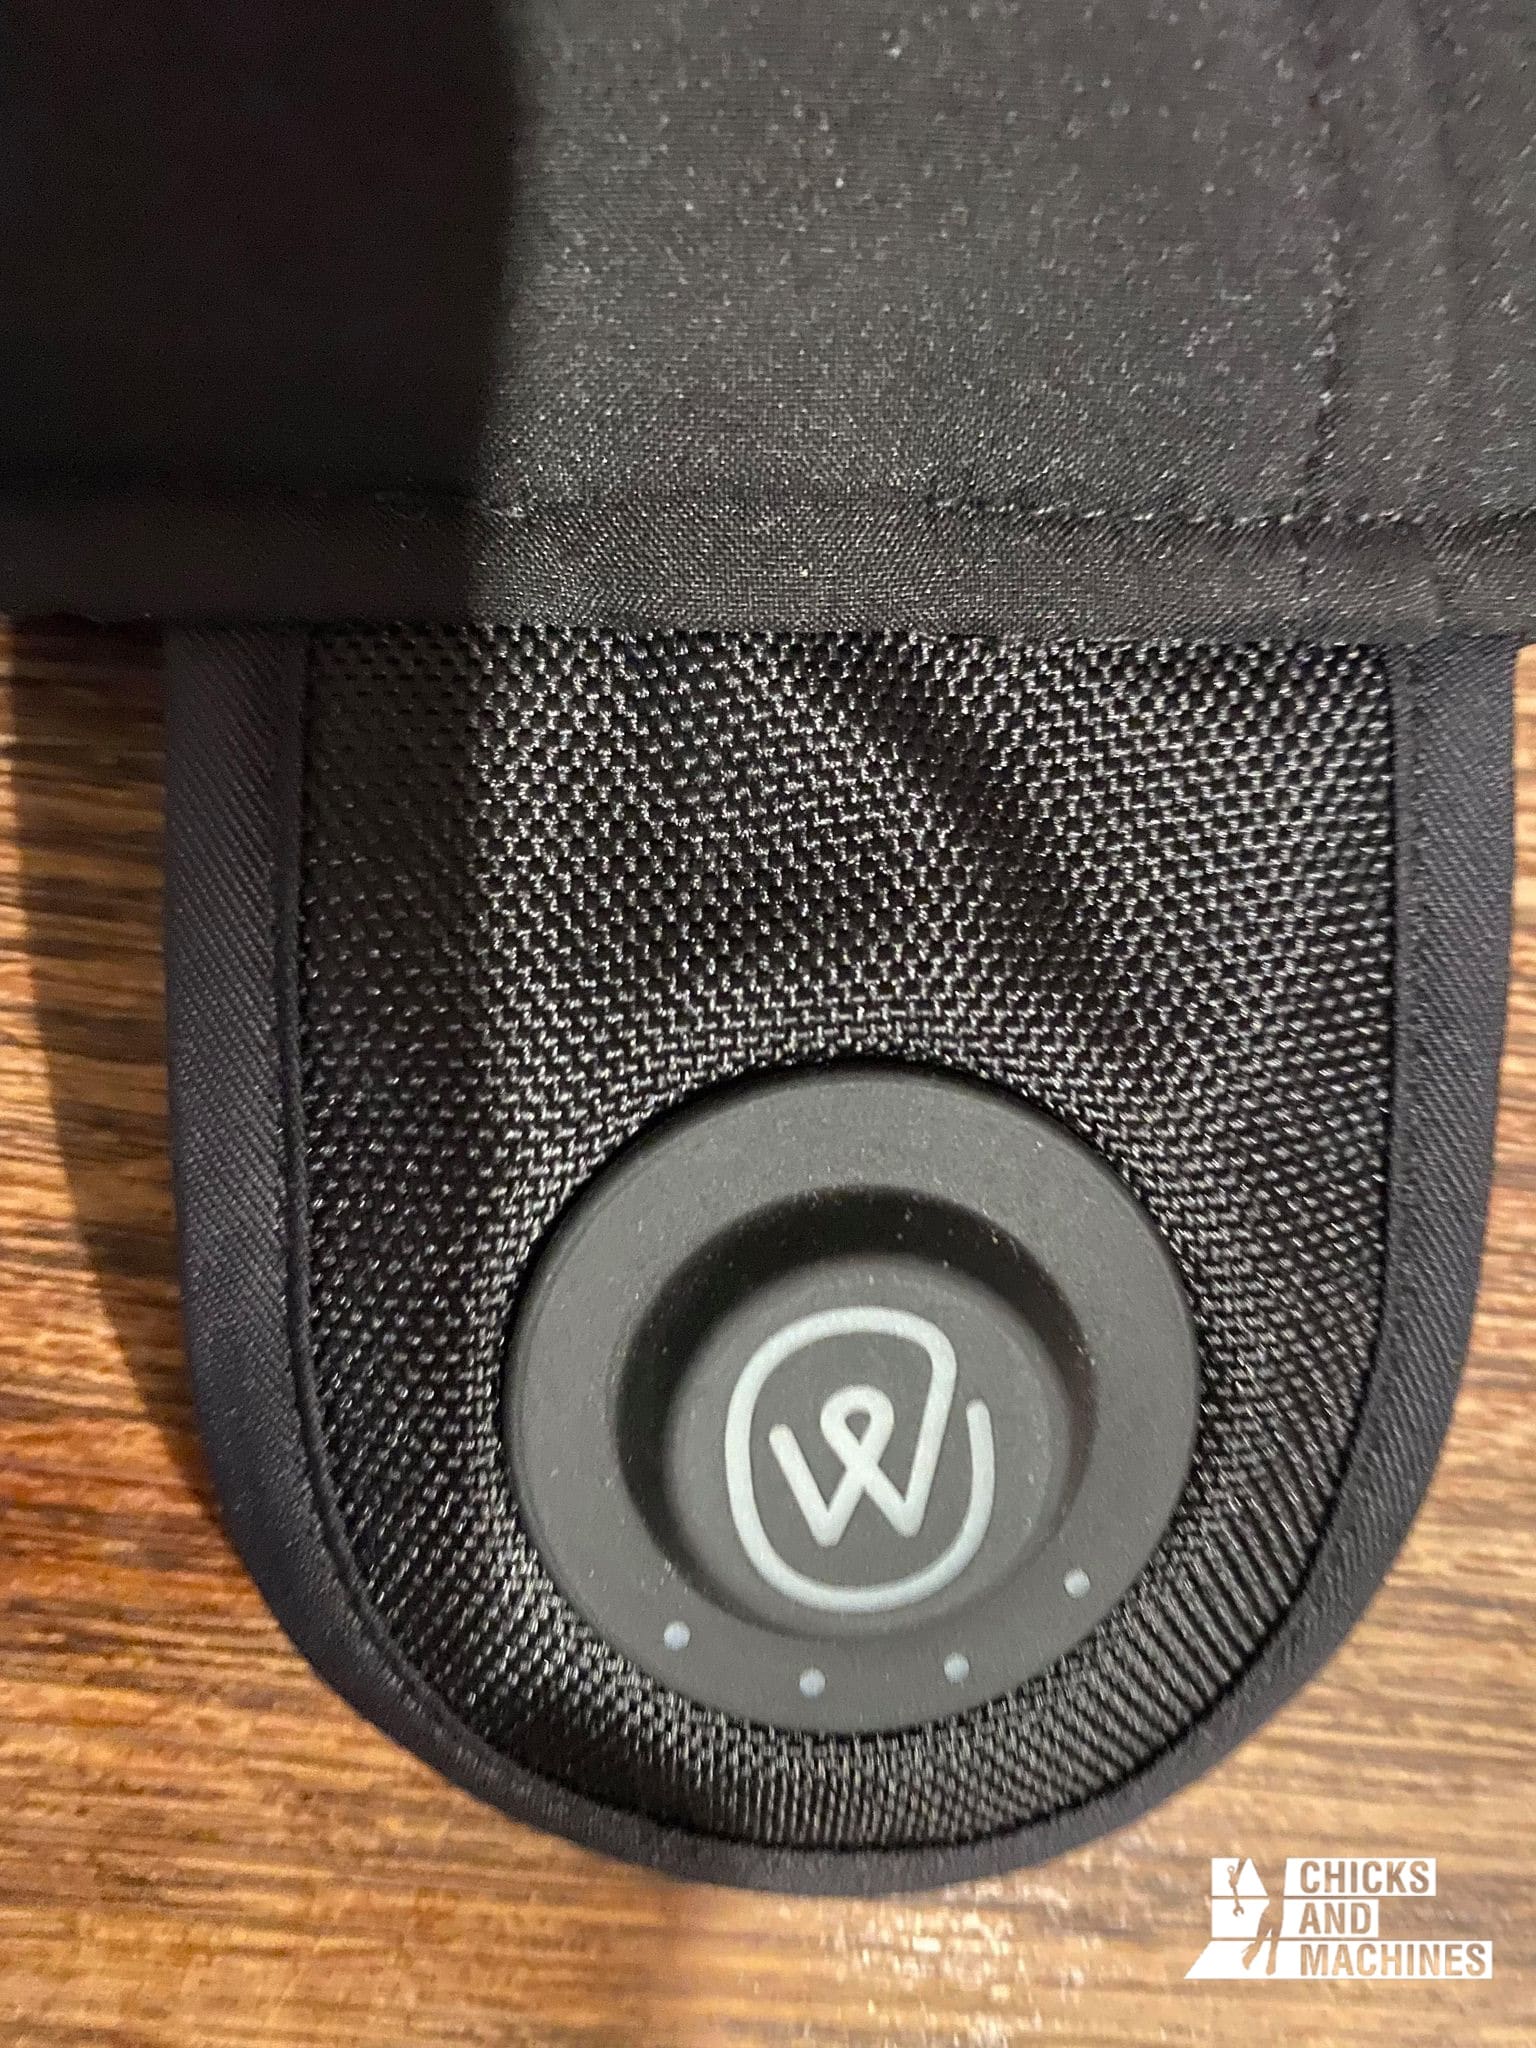 Une simple pression de ce bouton permet d'activer la chaleur de la veste Ewool